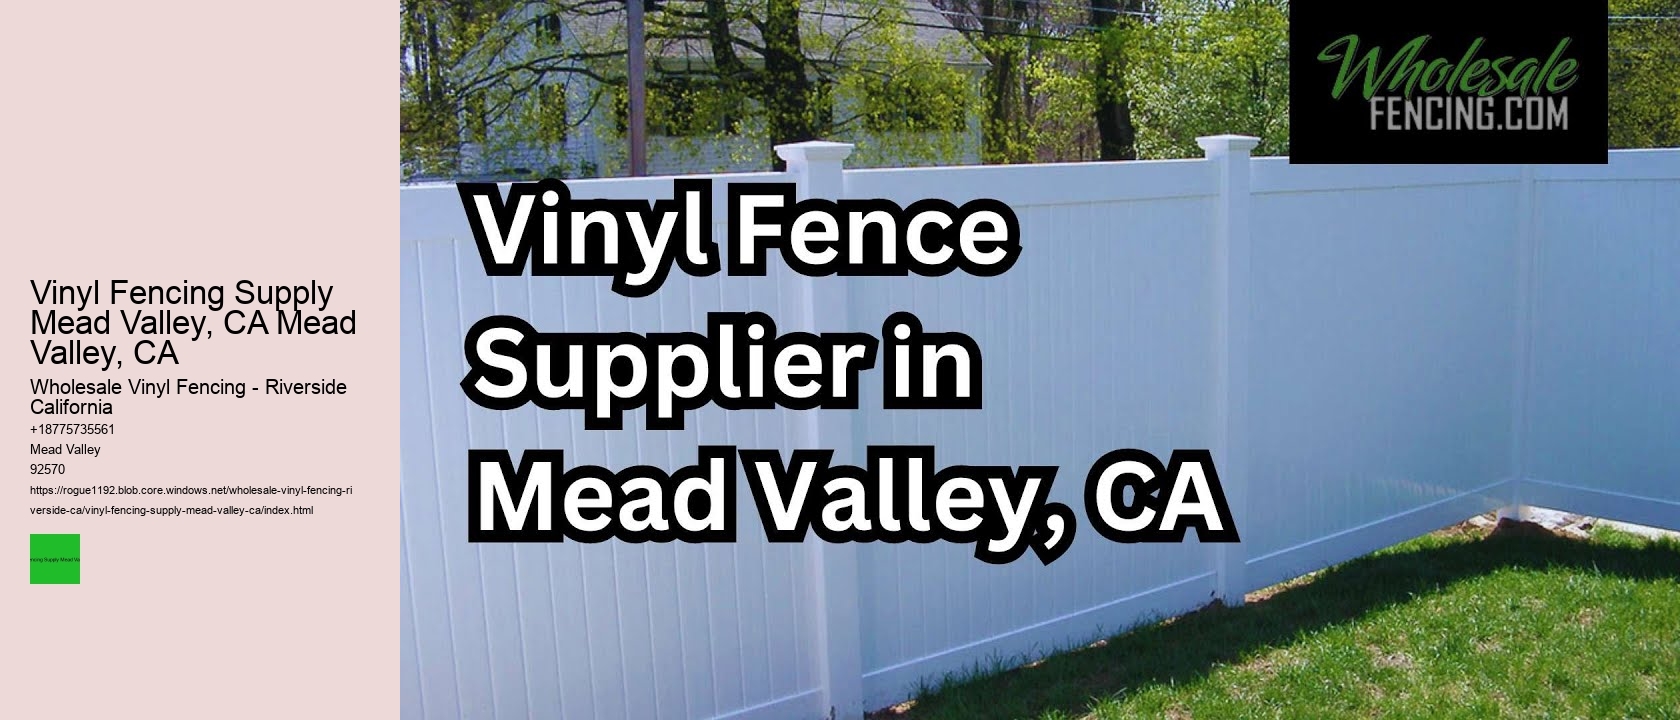 Vinyl Fencing Supply Mead Valley, CA Mead Valley, CA